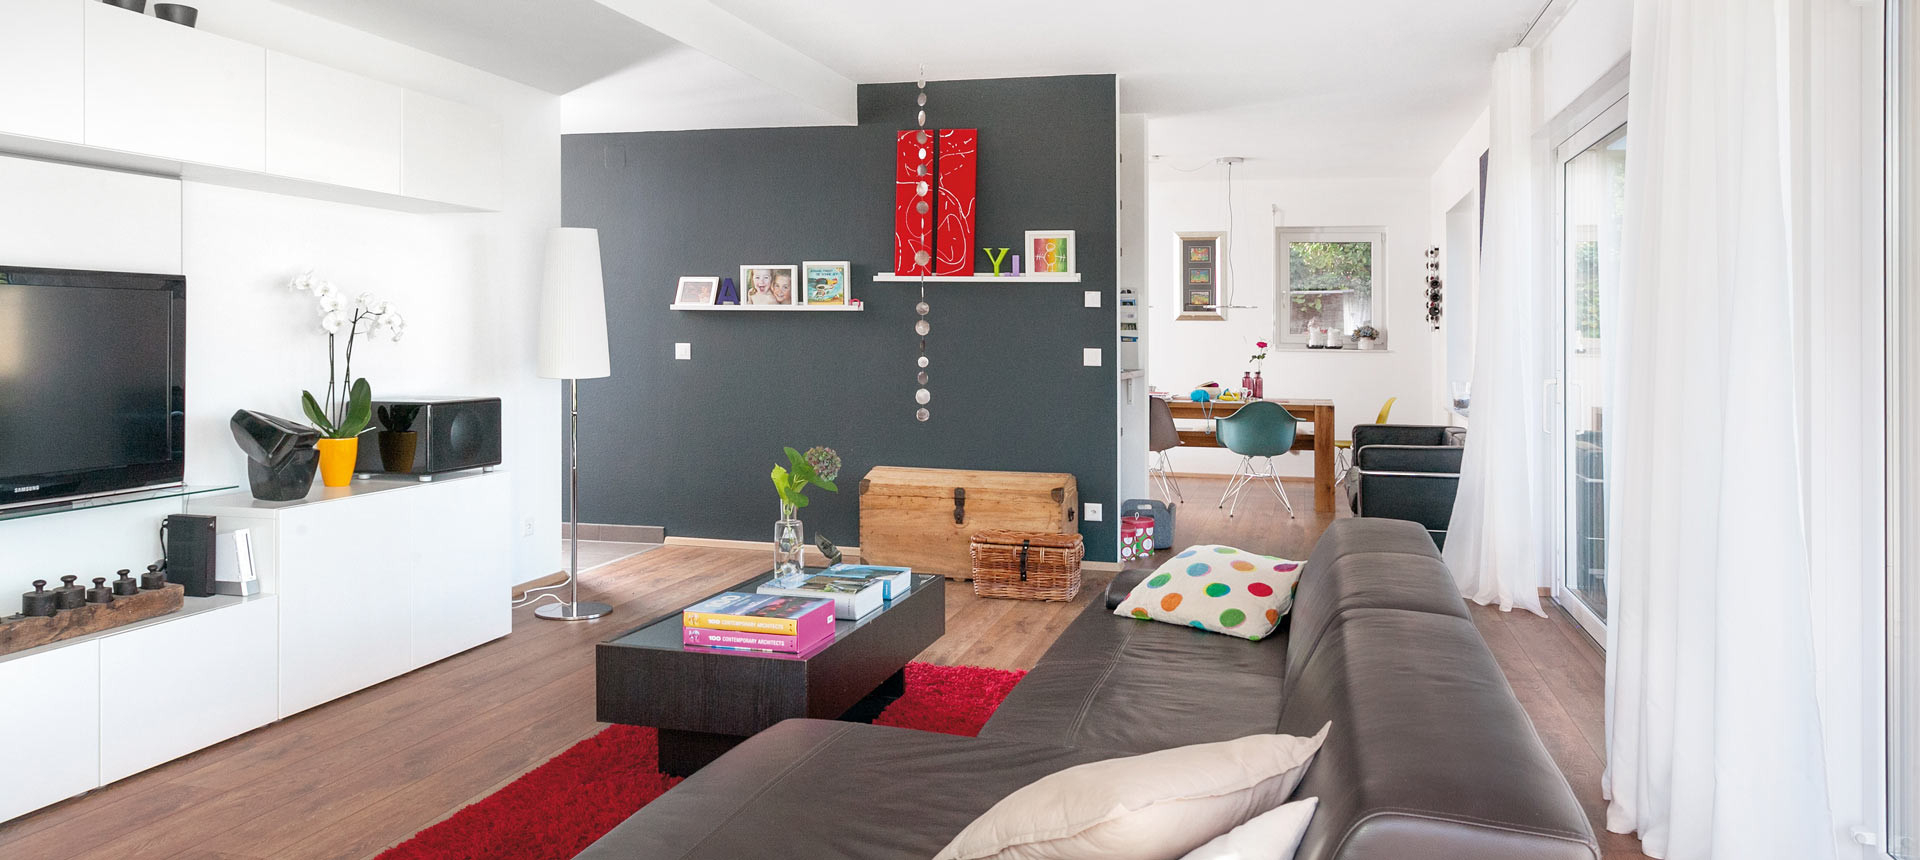 Gute Raumgrößen: Wie Viel Platz Braucht Man Zum Leben? | Schwörerblog regarding 20 Qm Wohnzimmer Mit Essbereich